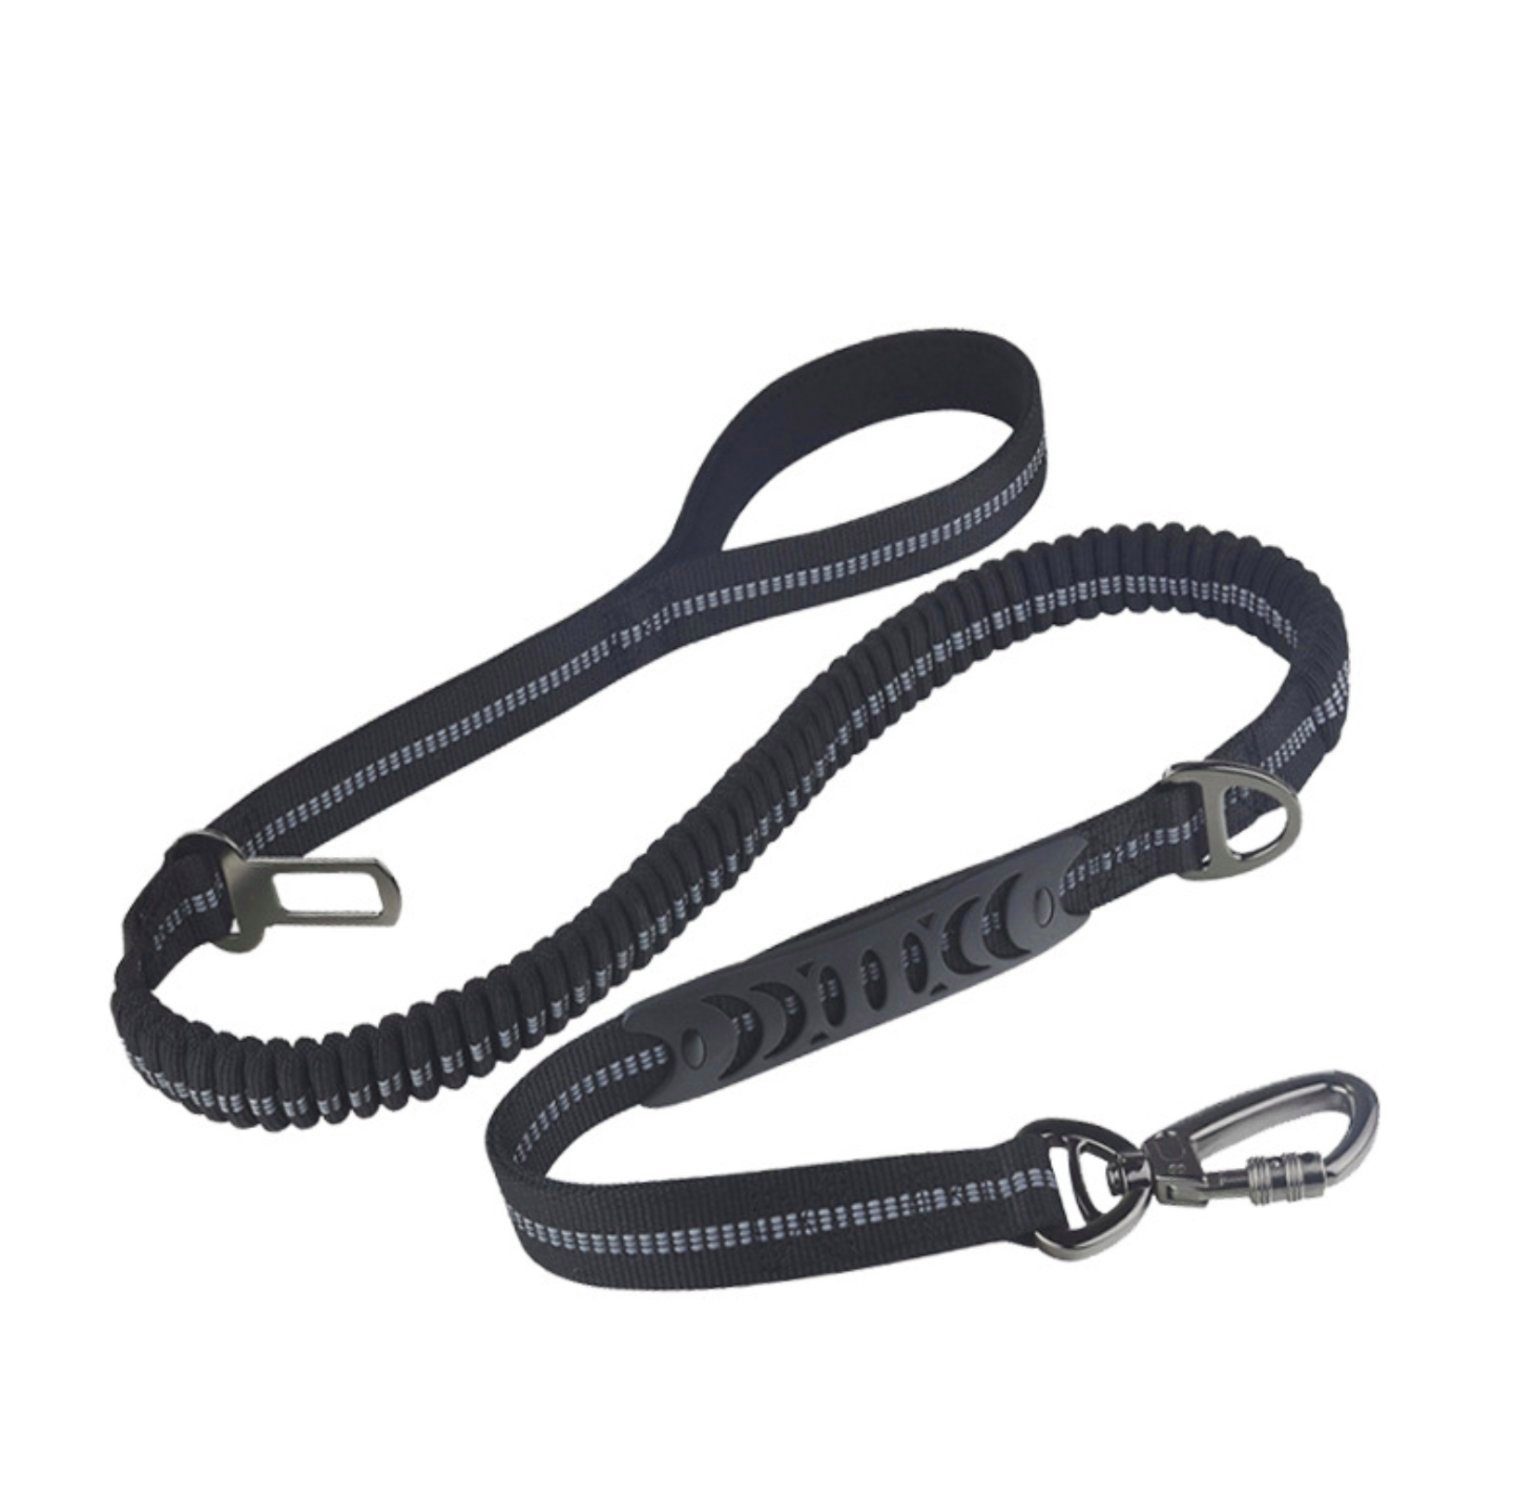 H-basics Hundeleine »Hundeleine 120cm mit elastisch - hochwertige robuste  in schwarz« online kaufen | OTTO